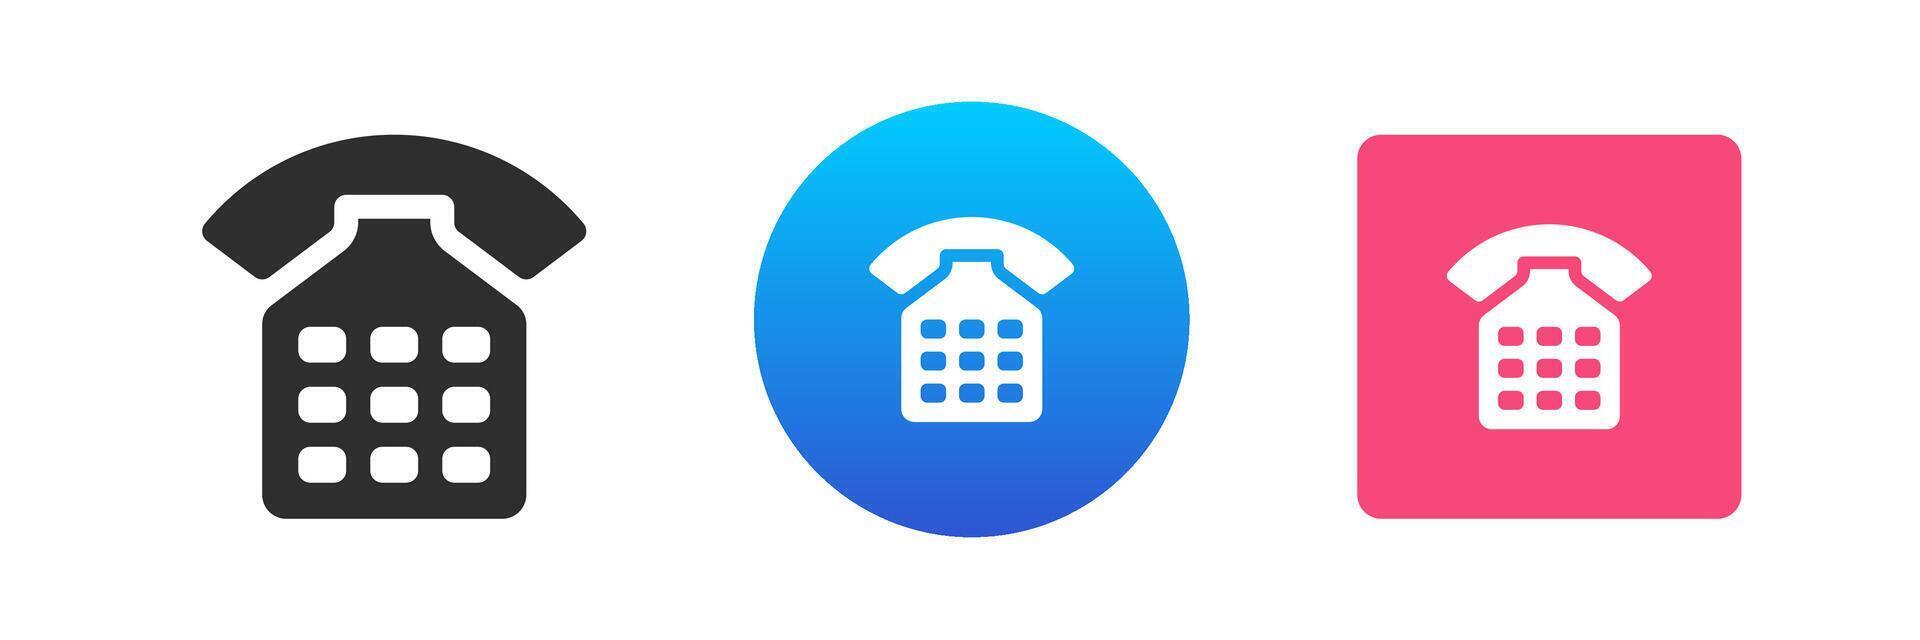 téléphone appel hotline bureau d'aide consultant un service ancien Téléphone icône ensemble plat illustration vecteur